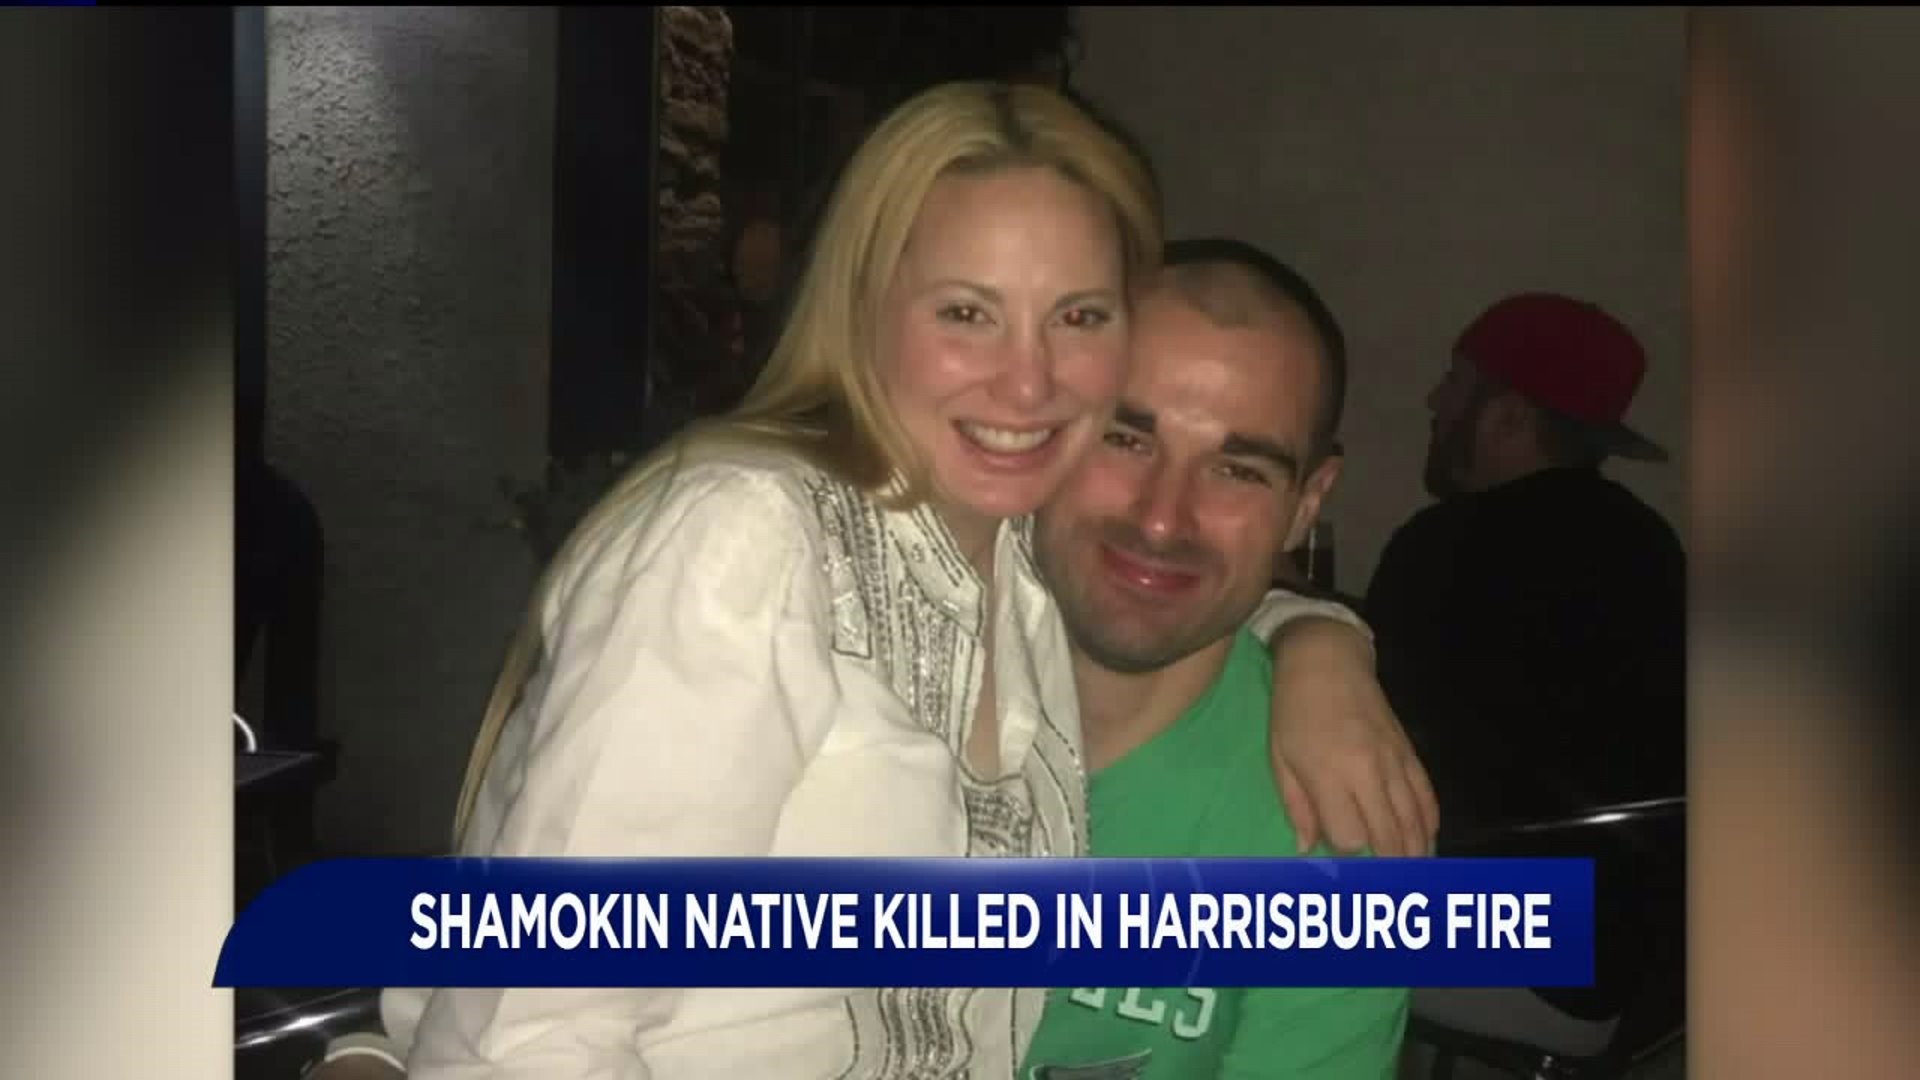 Shamokin Native Killed in Harrisburg Fire